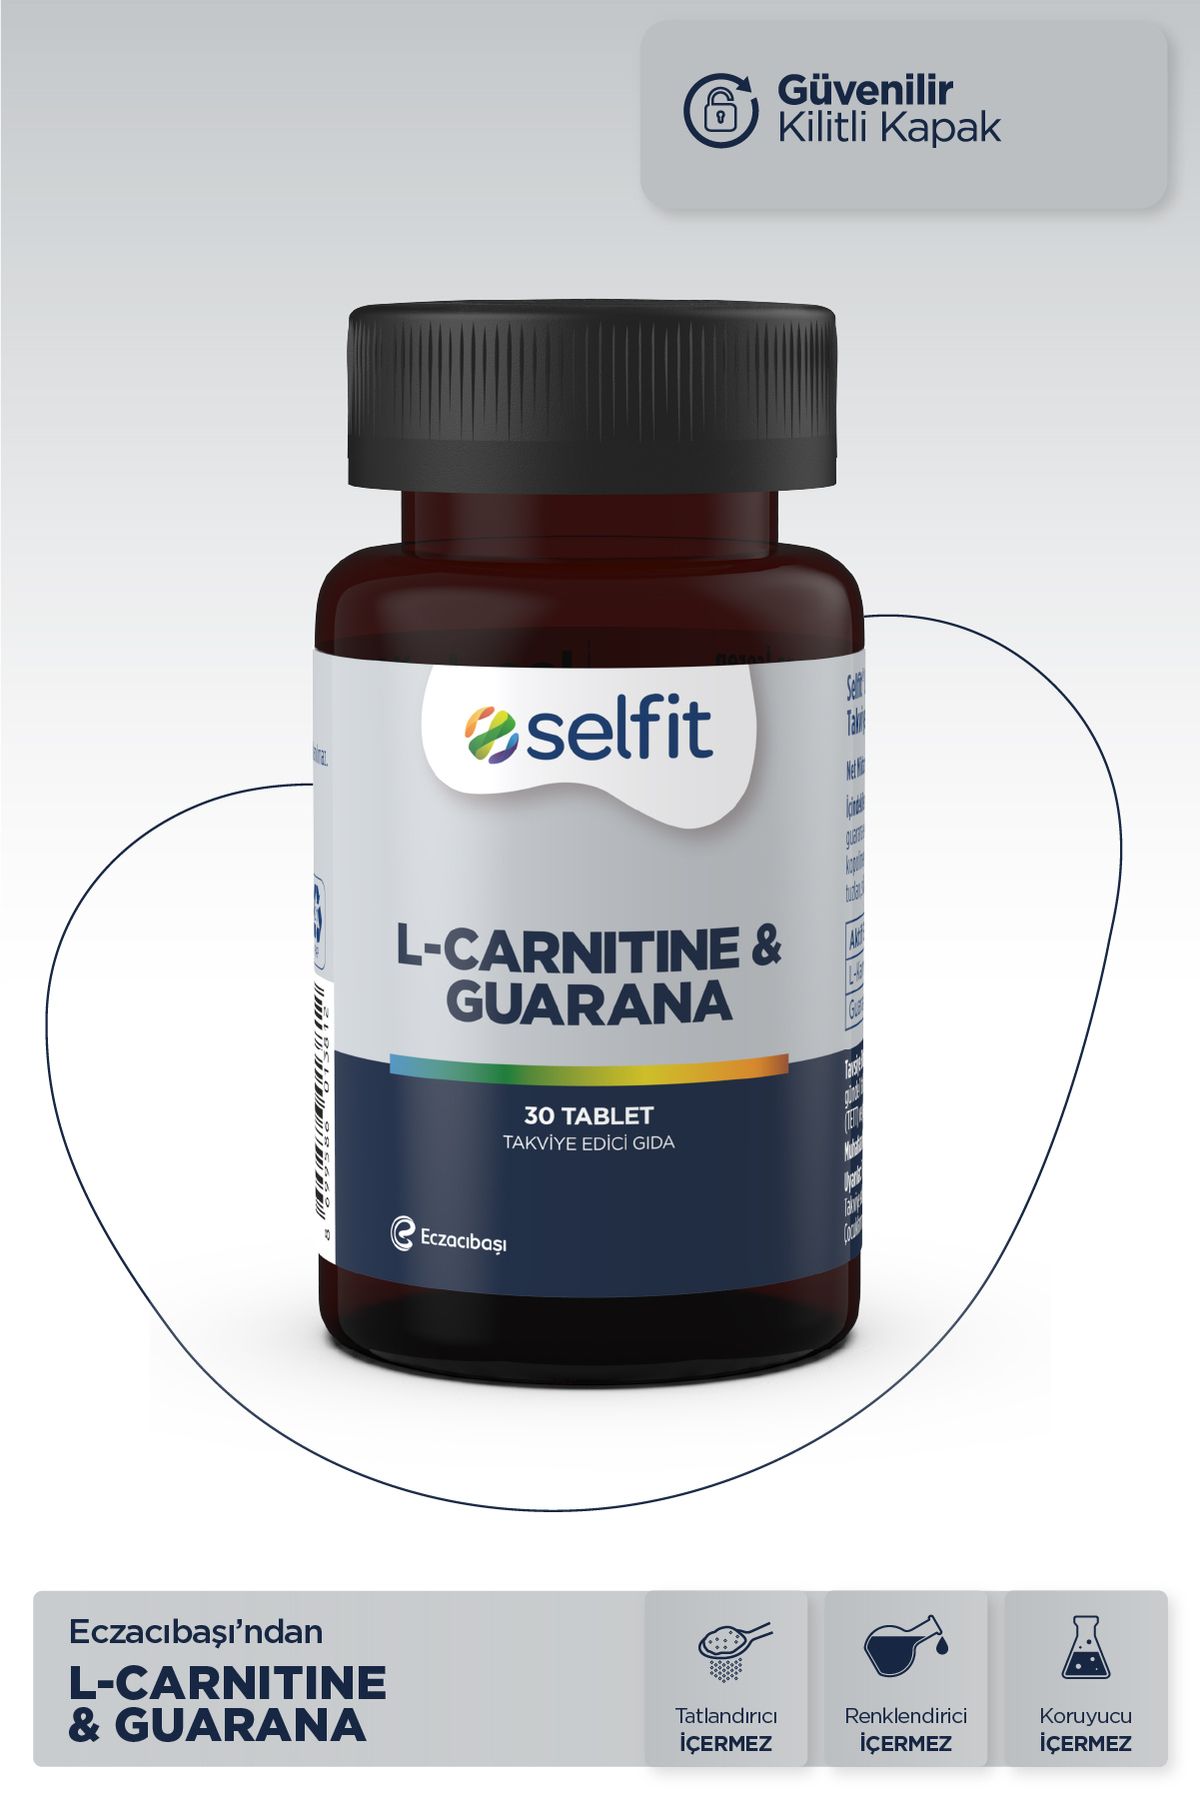 Selfit L-carnitine & Guarana 30 Tablet